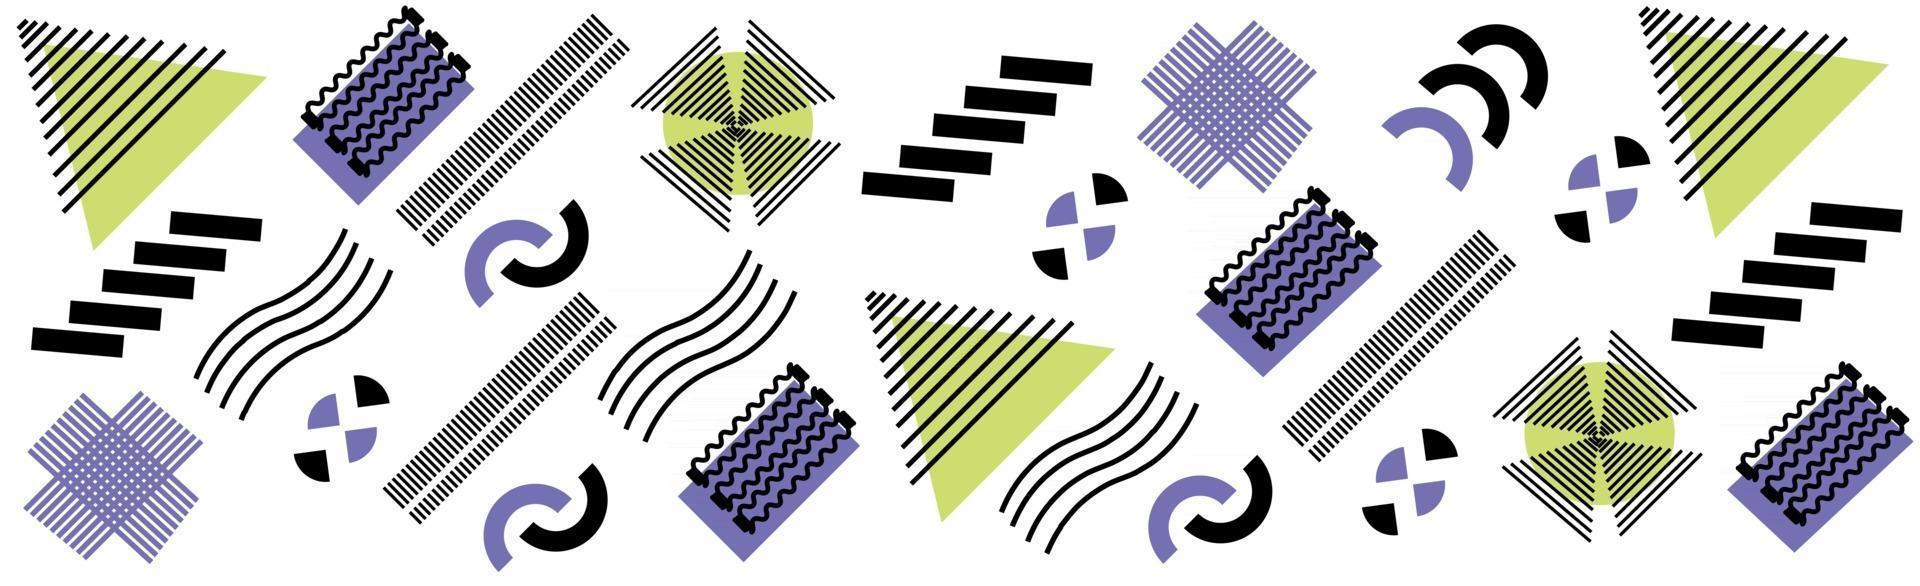 abstrakt bakgrund med olika geometriska former - illustration vektor